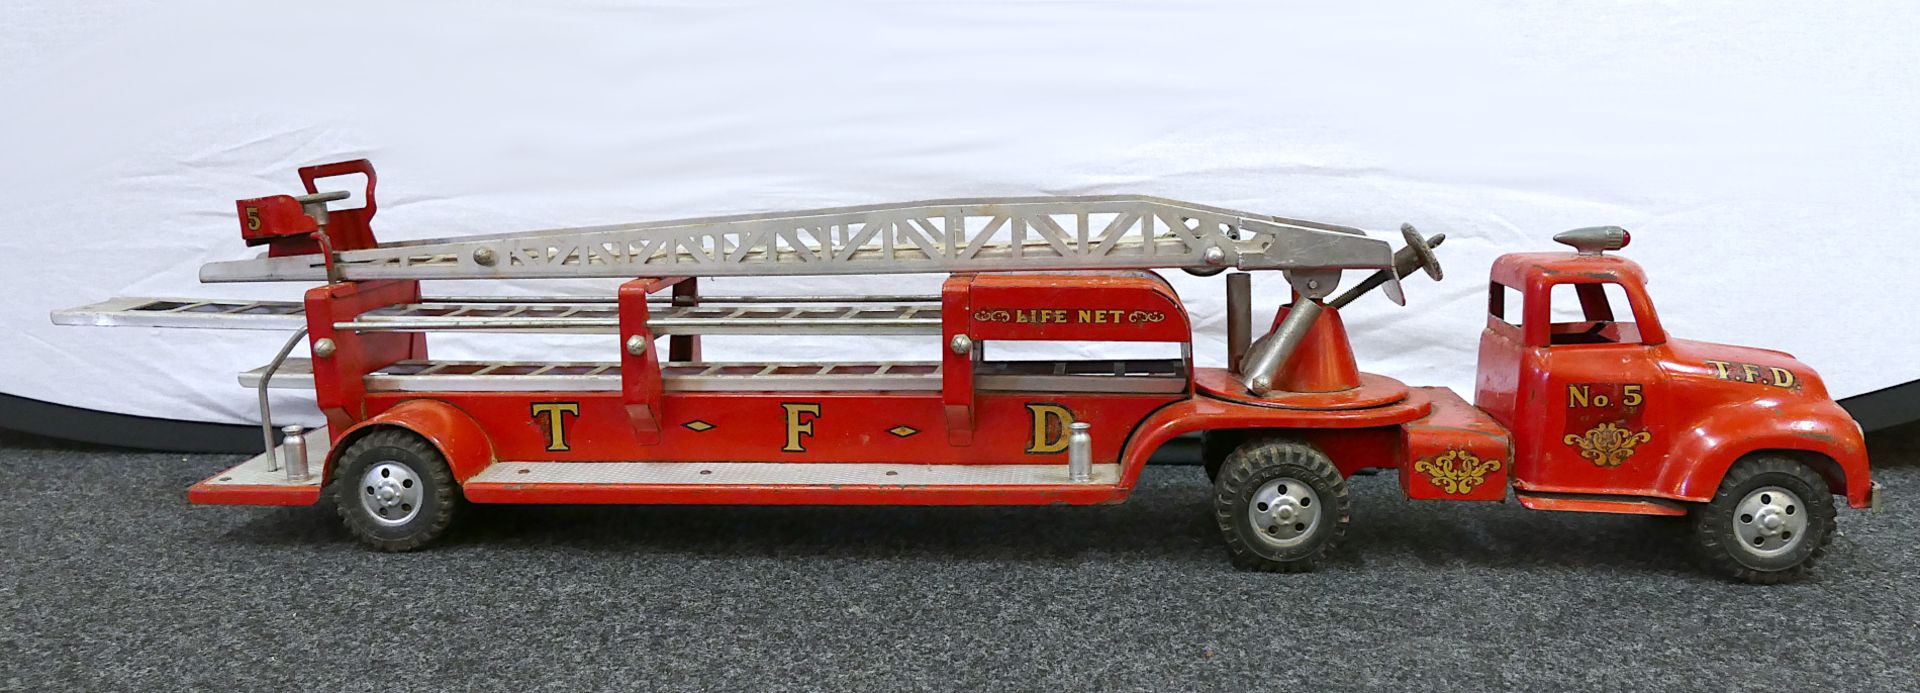 1 Feuerwehrleiterwagen TONKA, USA "T.F.D. No. 5" wohl 1950er Jahre, rot lackierter Stahl u.a., ca. L - Bild 2 aus 8